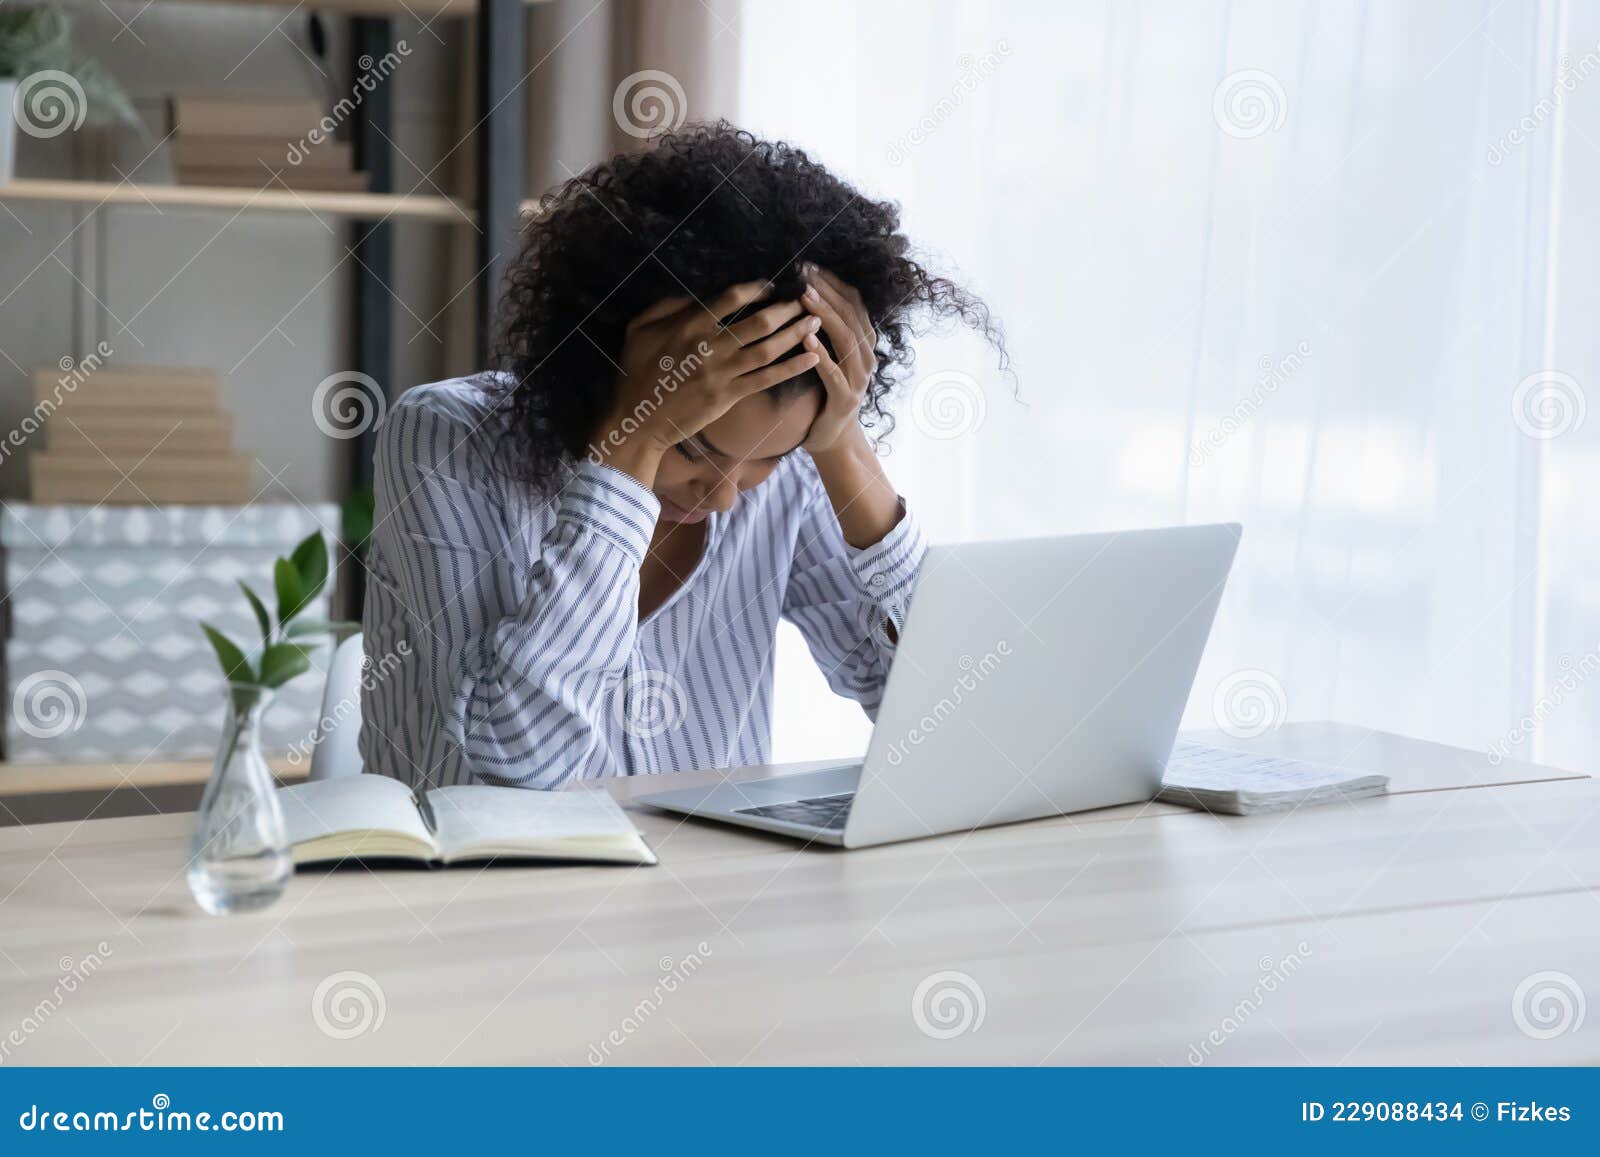 depressed upset black female sit at workplace hug head